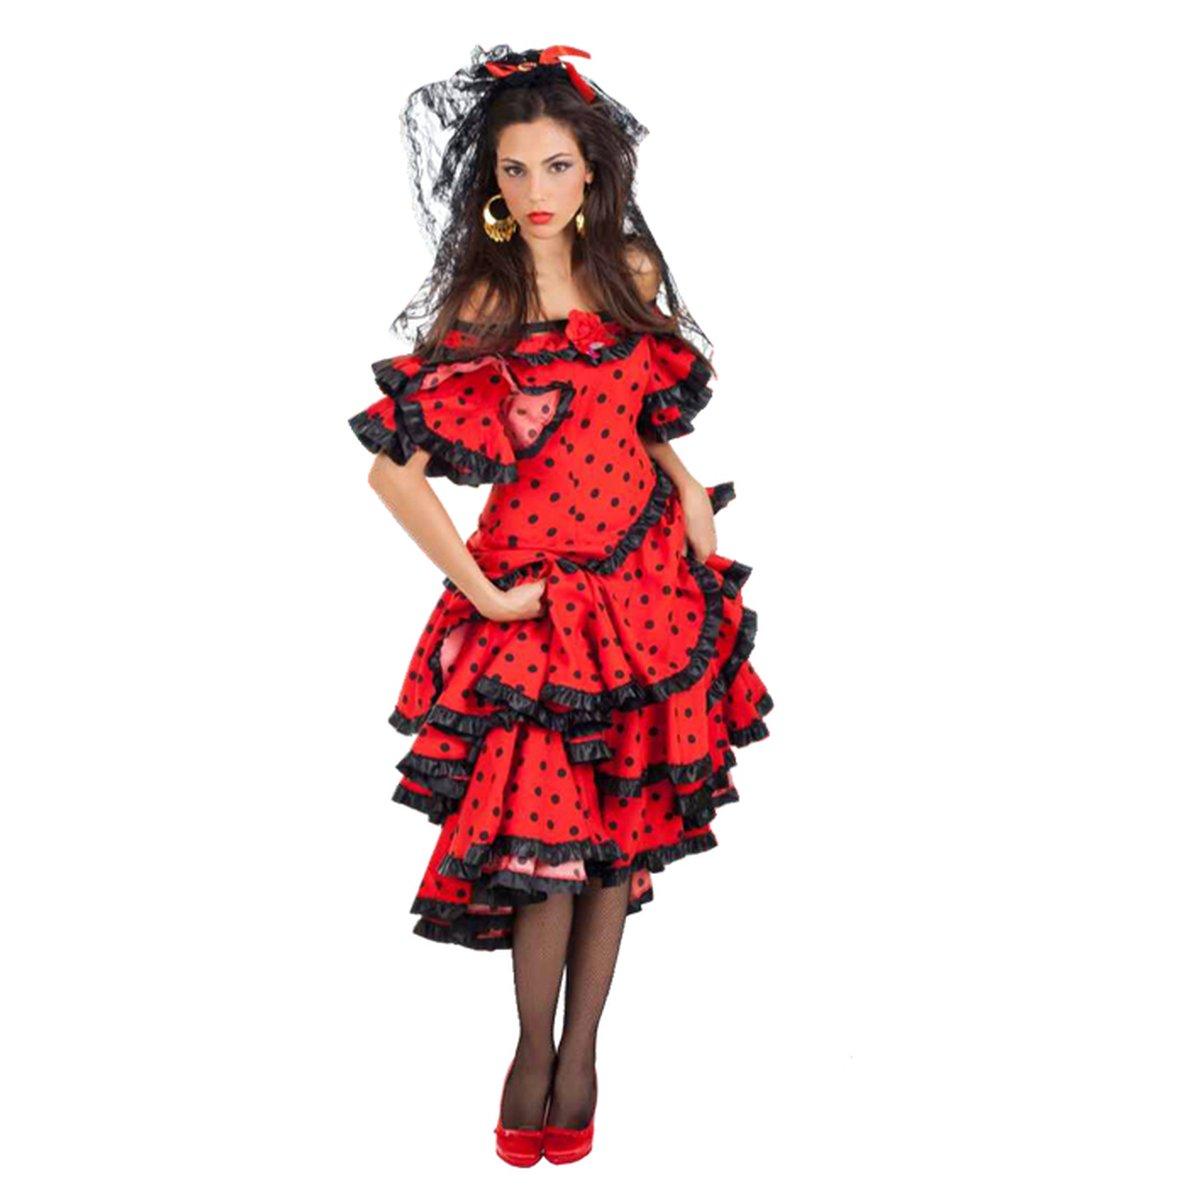 Vestito da spagnola  Vestiti, Carnevale, Costumi